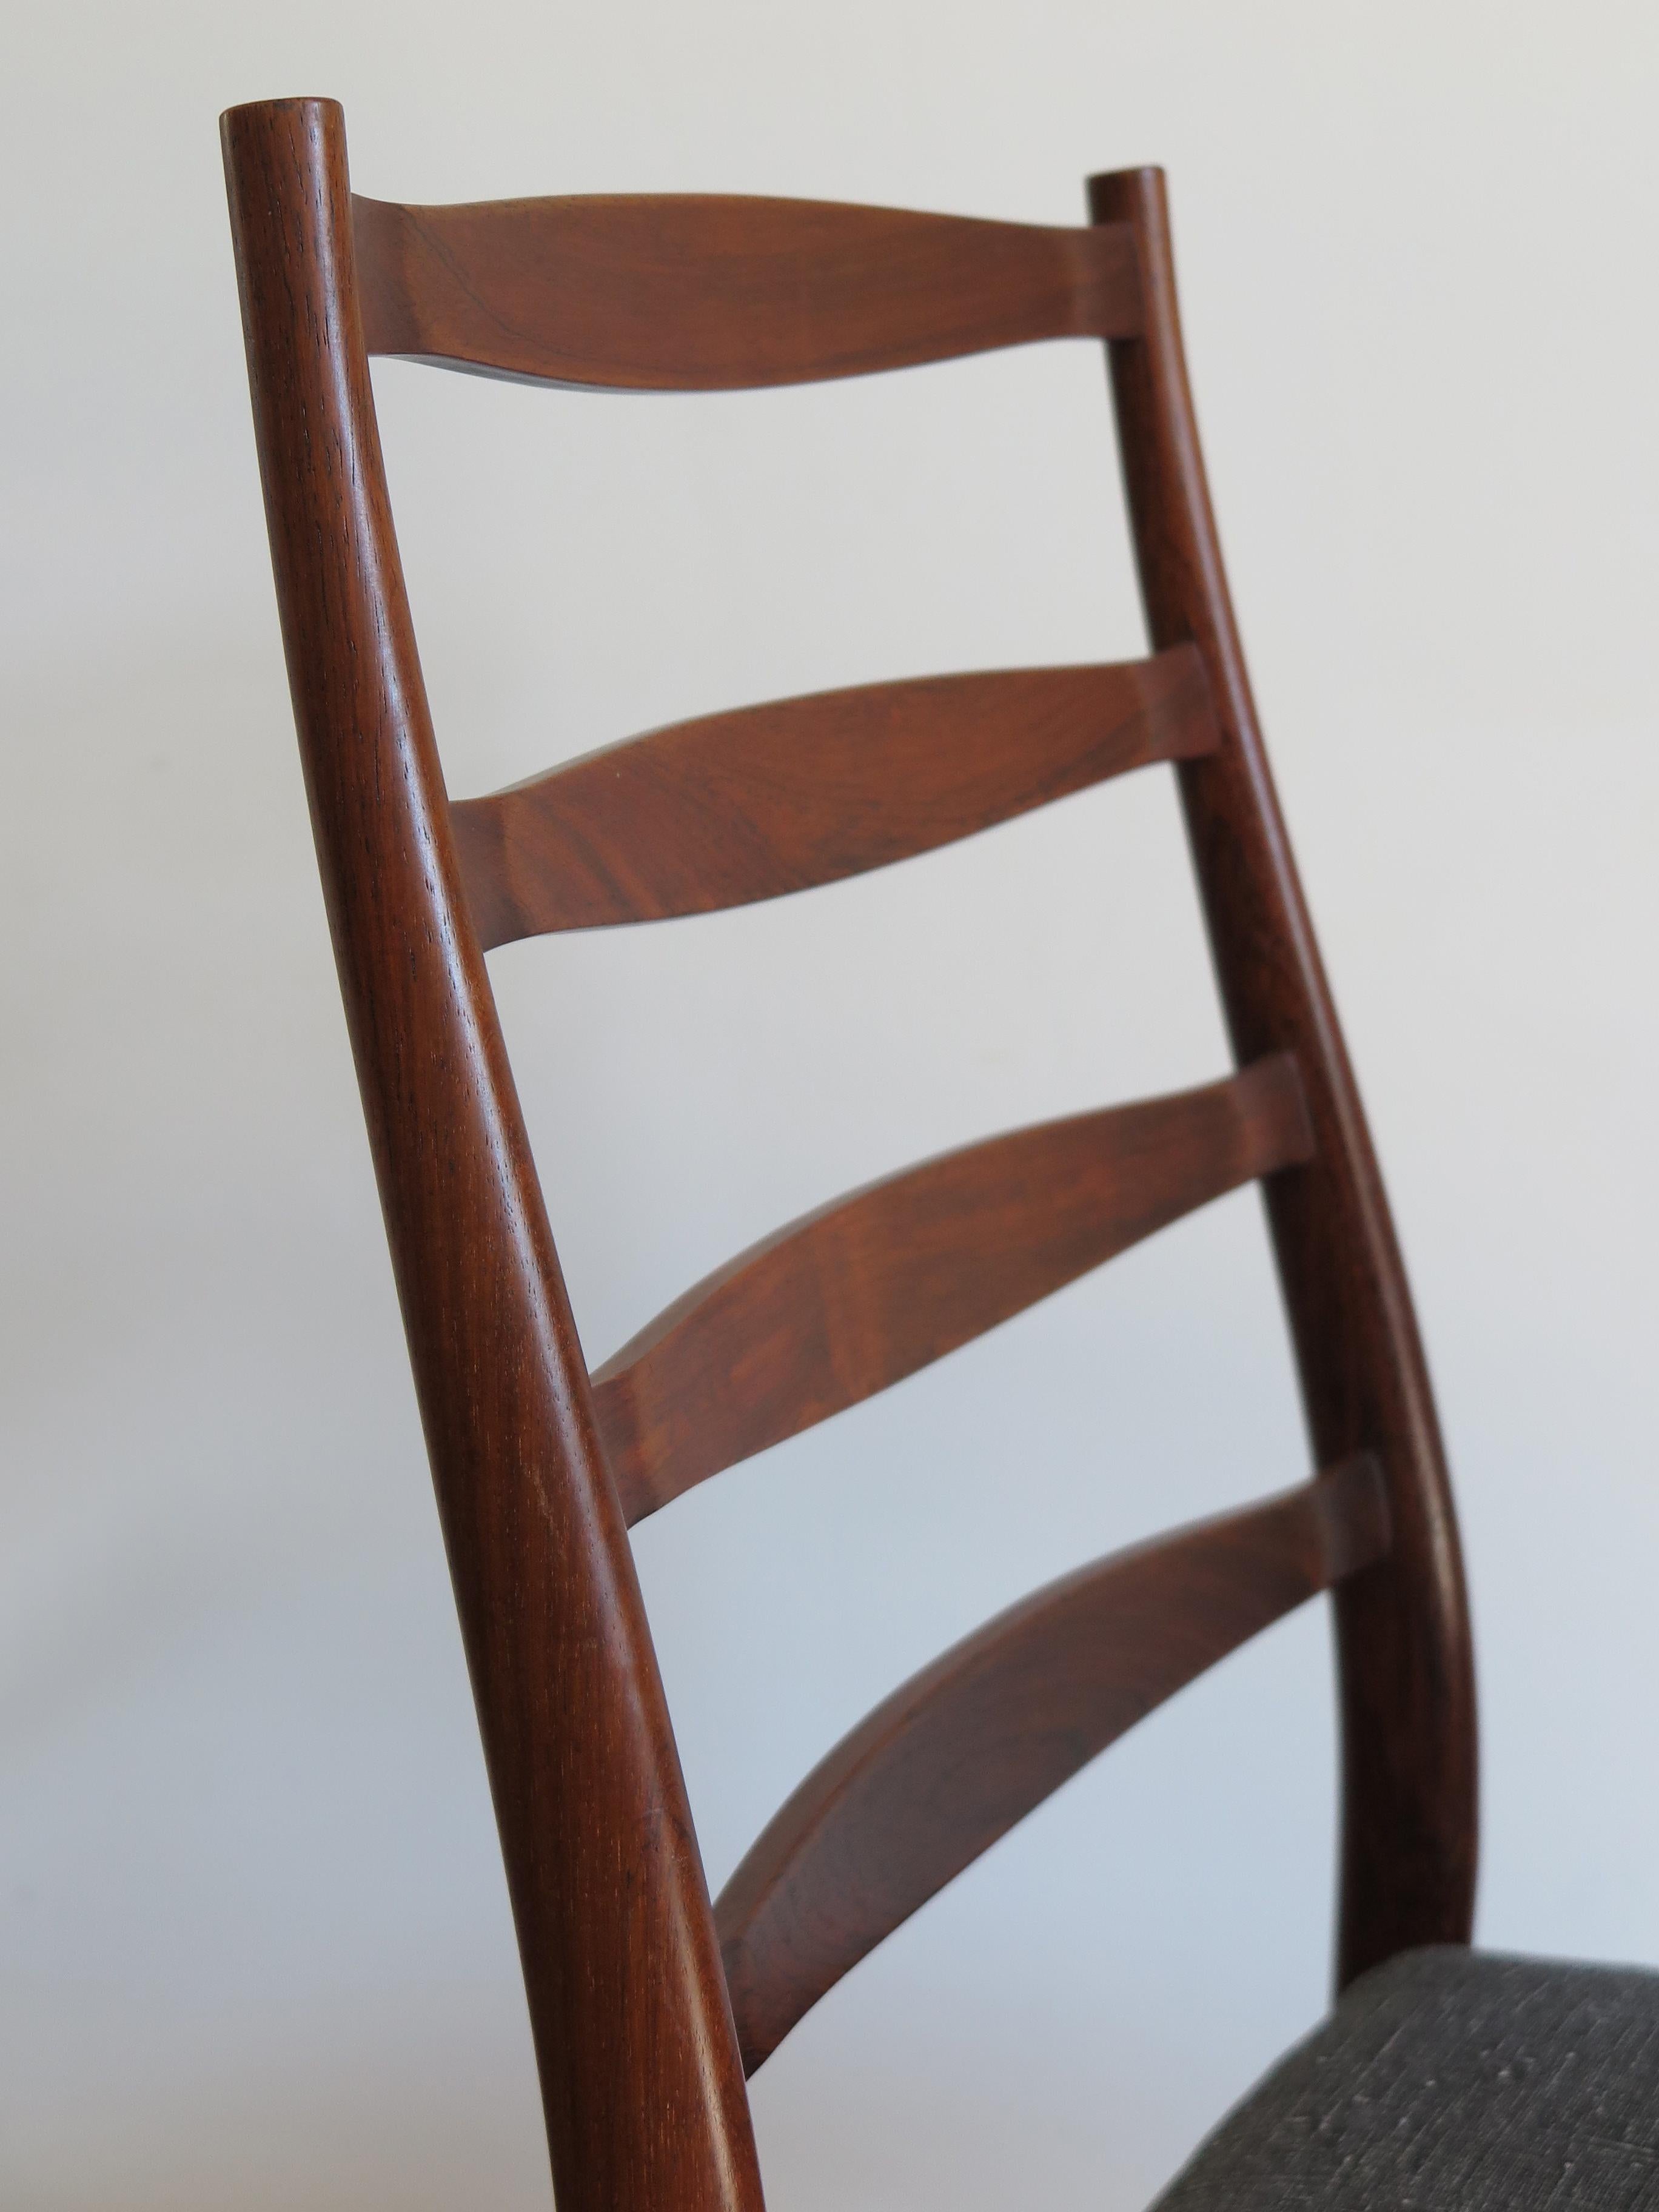 Arne Vodder Mid-Century Modern Scandinavian Dark Wood Dining Chairs, 1960s For Sale 5